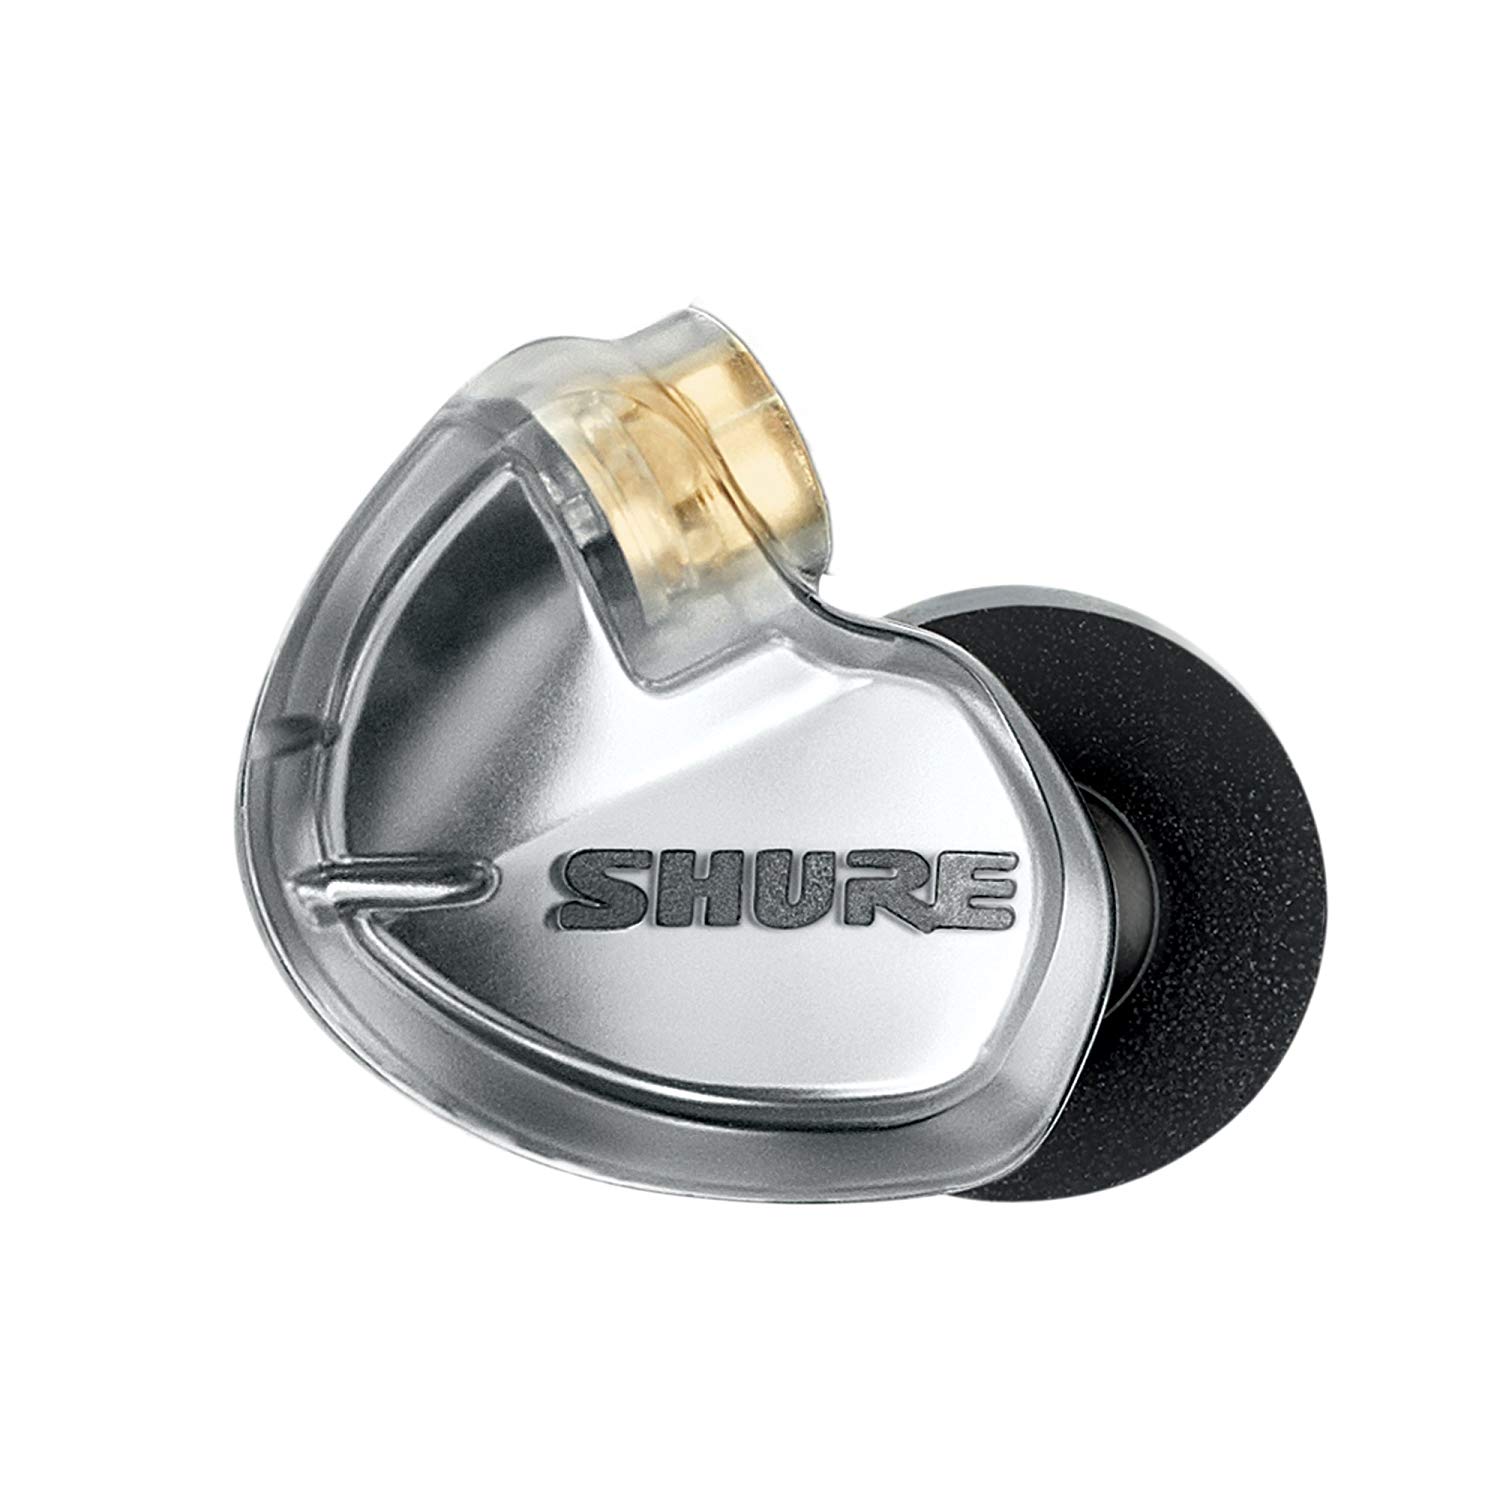 Shure SE425 Wireless